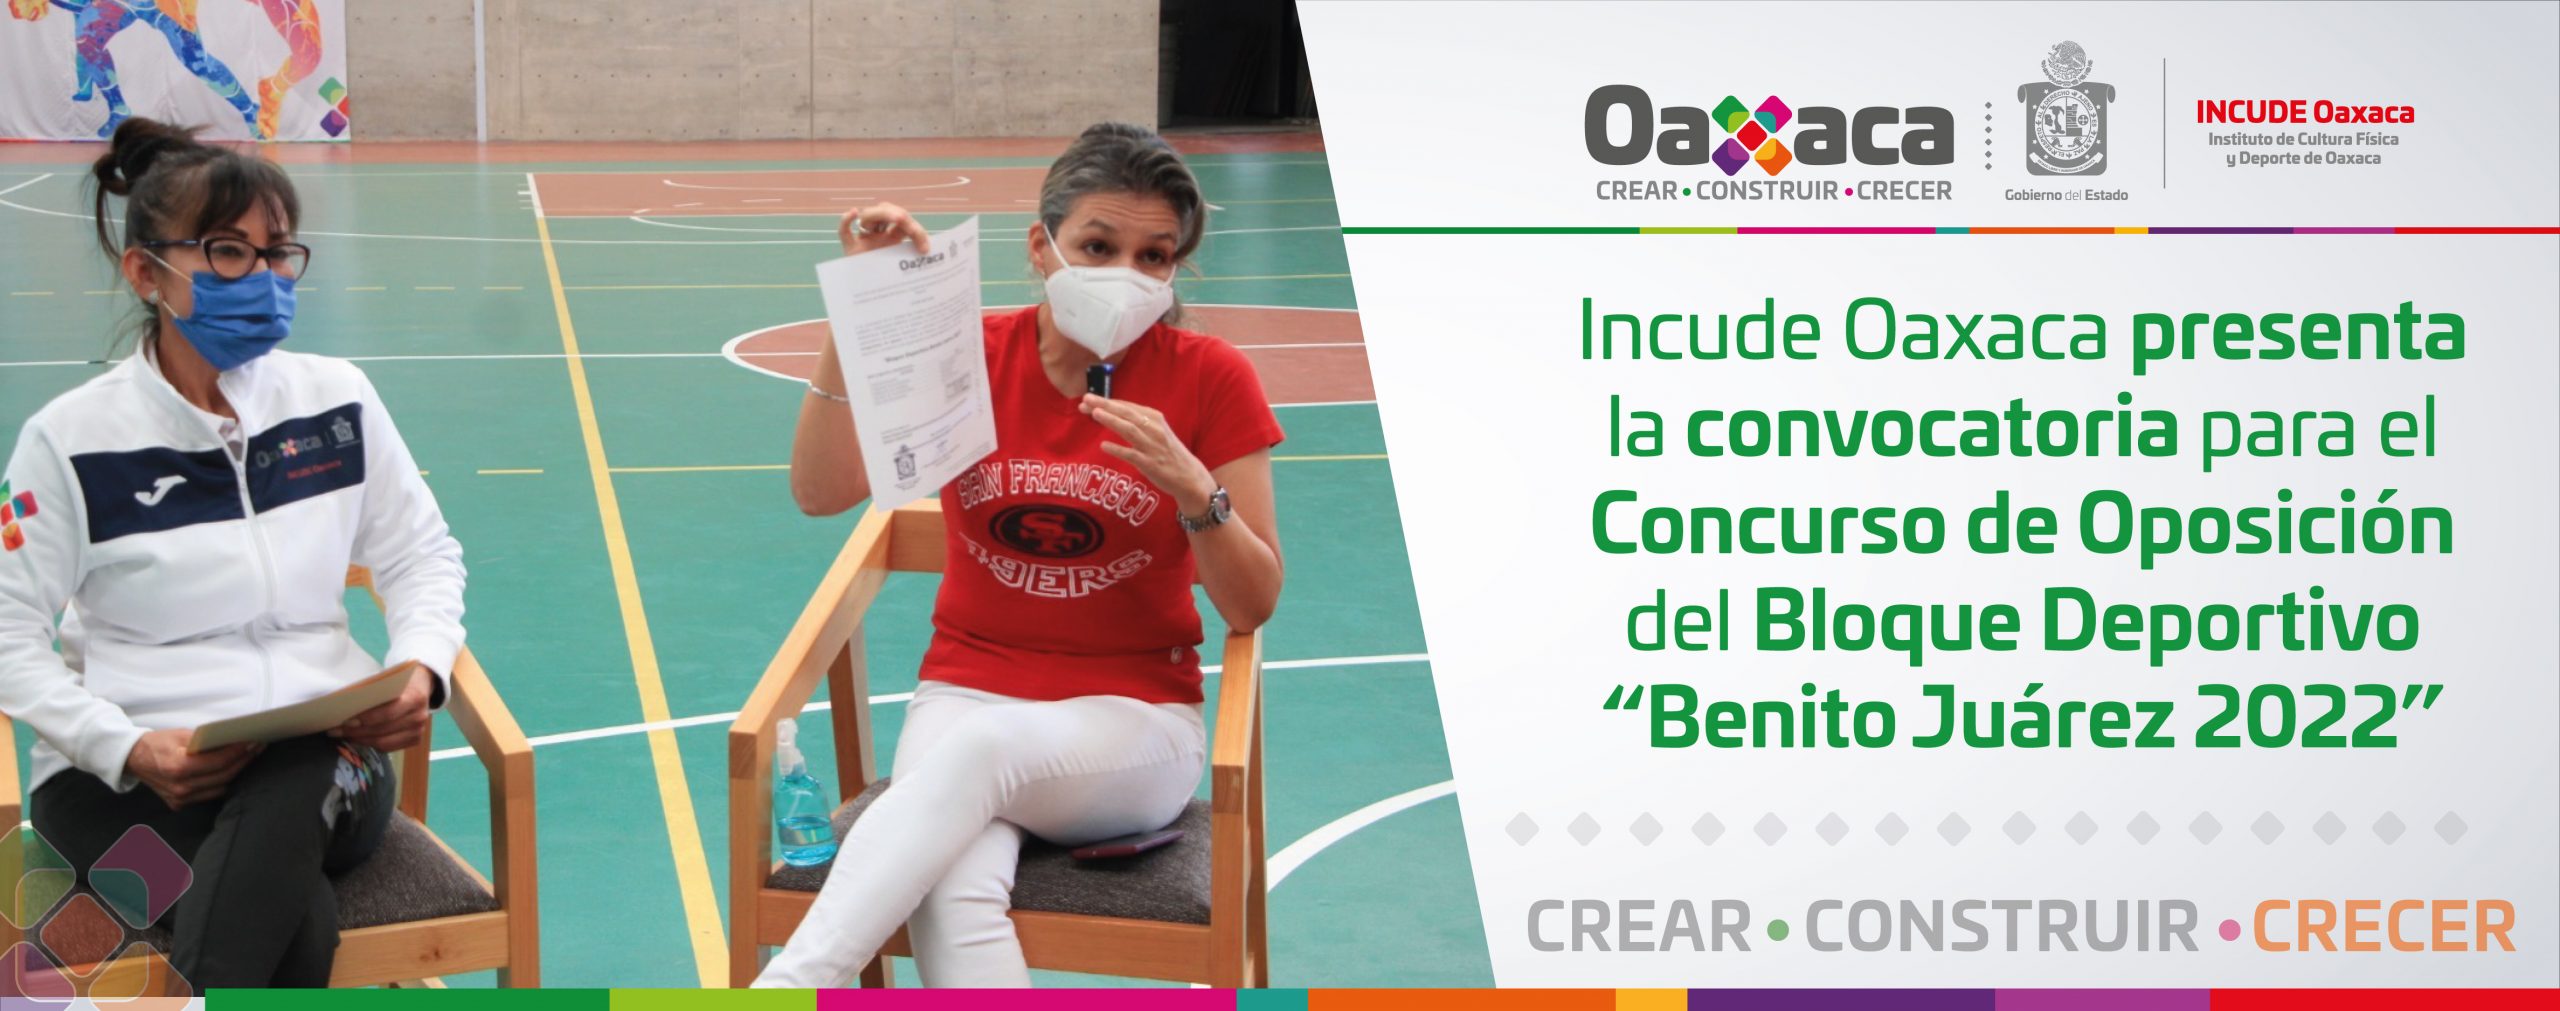 Incude Oaxaca presenta la convocatoria para el Concurso de Oposición del Bloque Deportivo “Benito Juárez 2022”